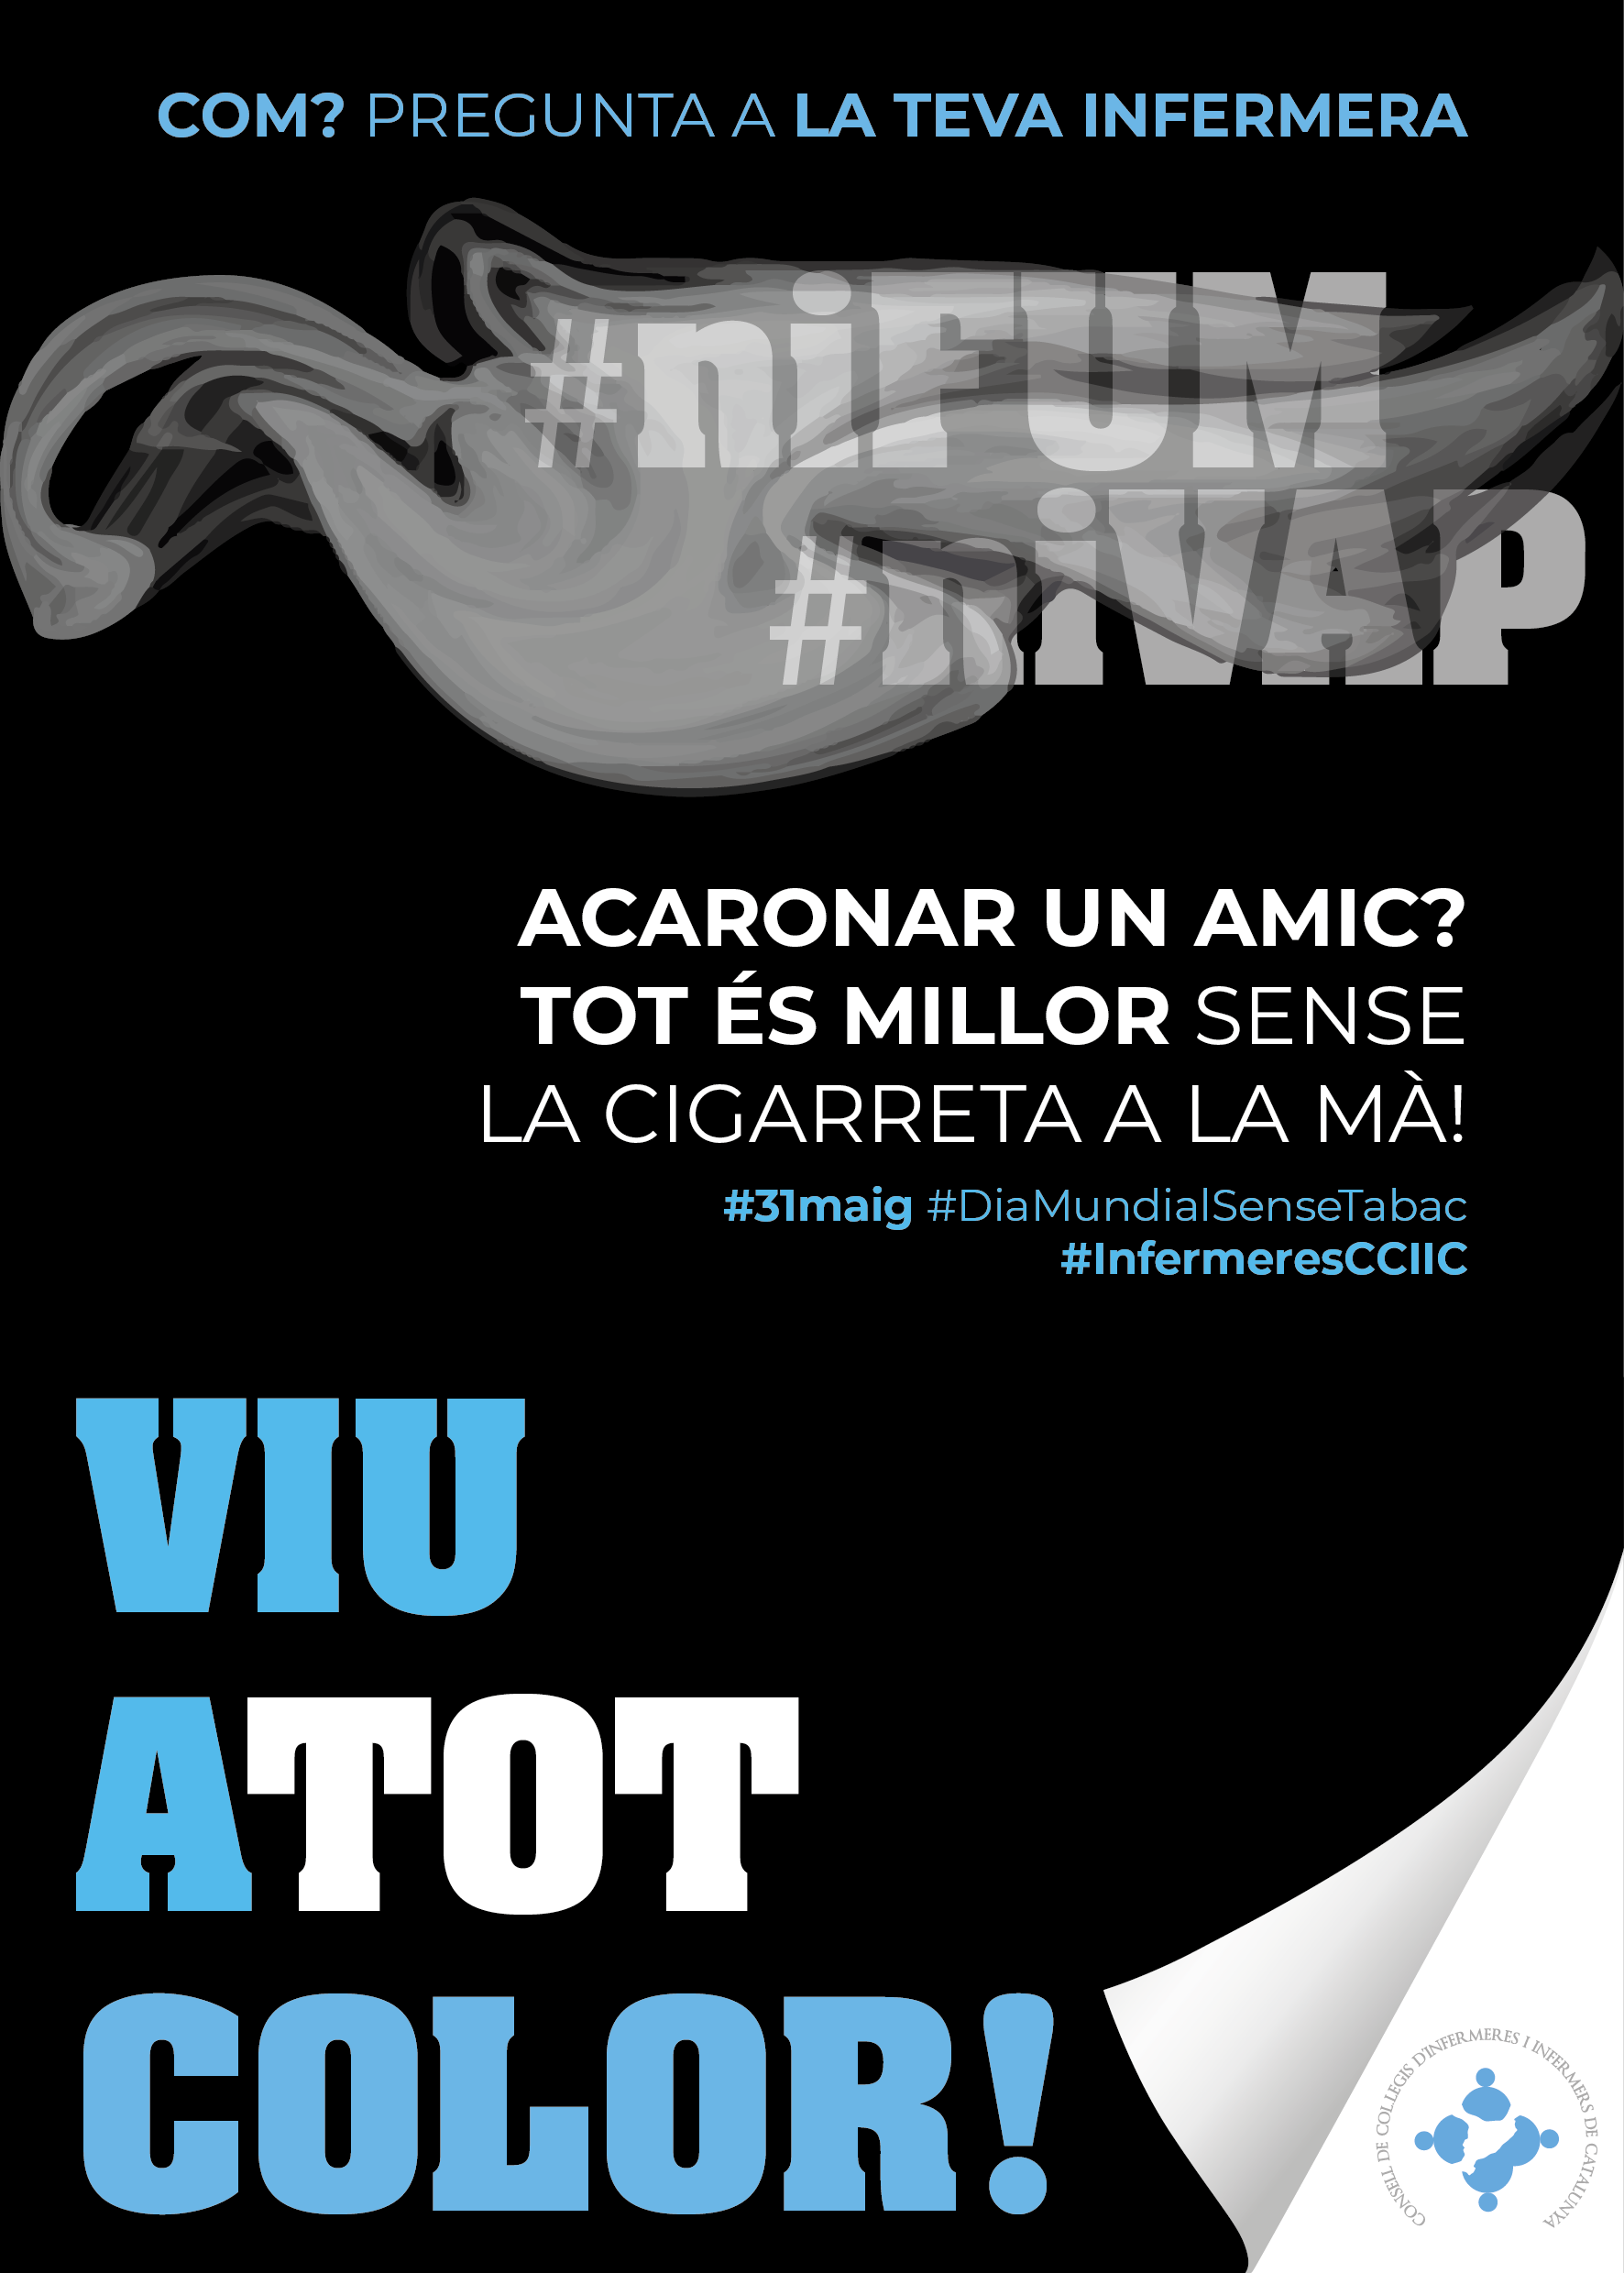 Les infermeres de Barcelona se sumen a la campanya #niFUM #niVAP Viu a tot color! per conscienciar la població sobre els riscos de fumar i vapejar